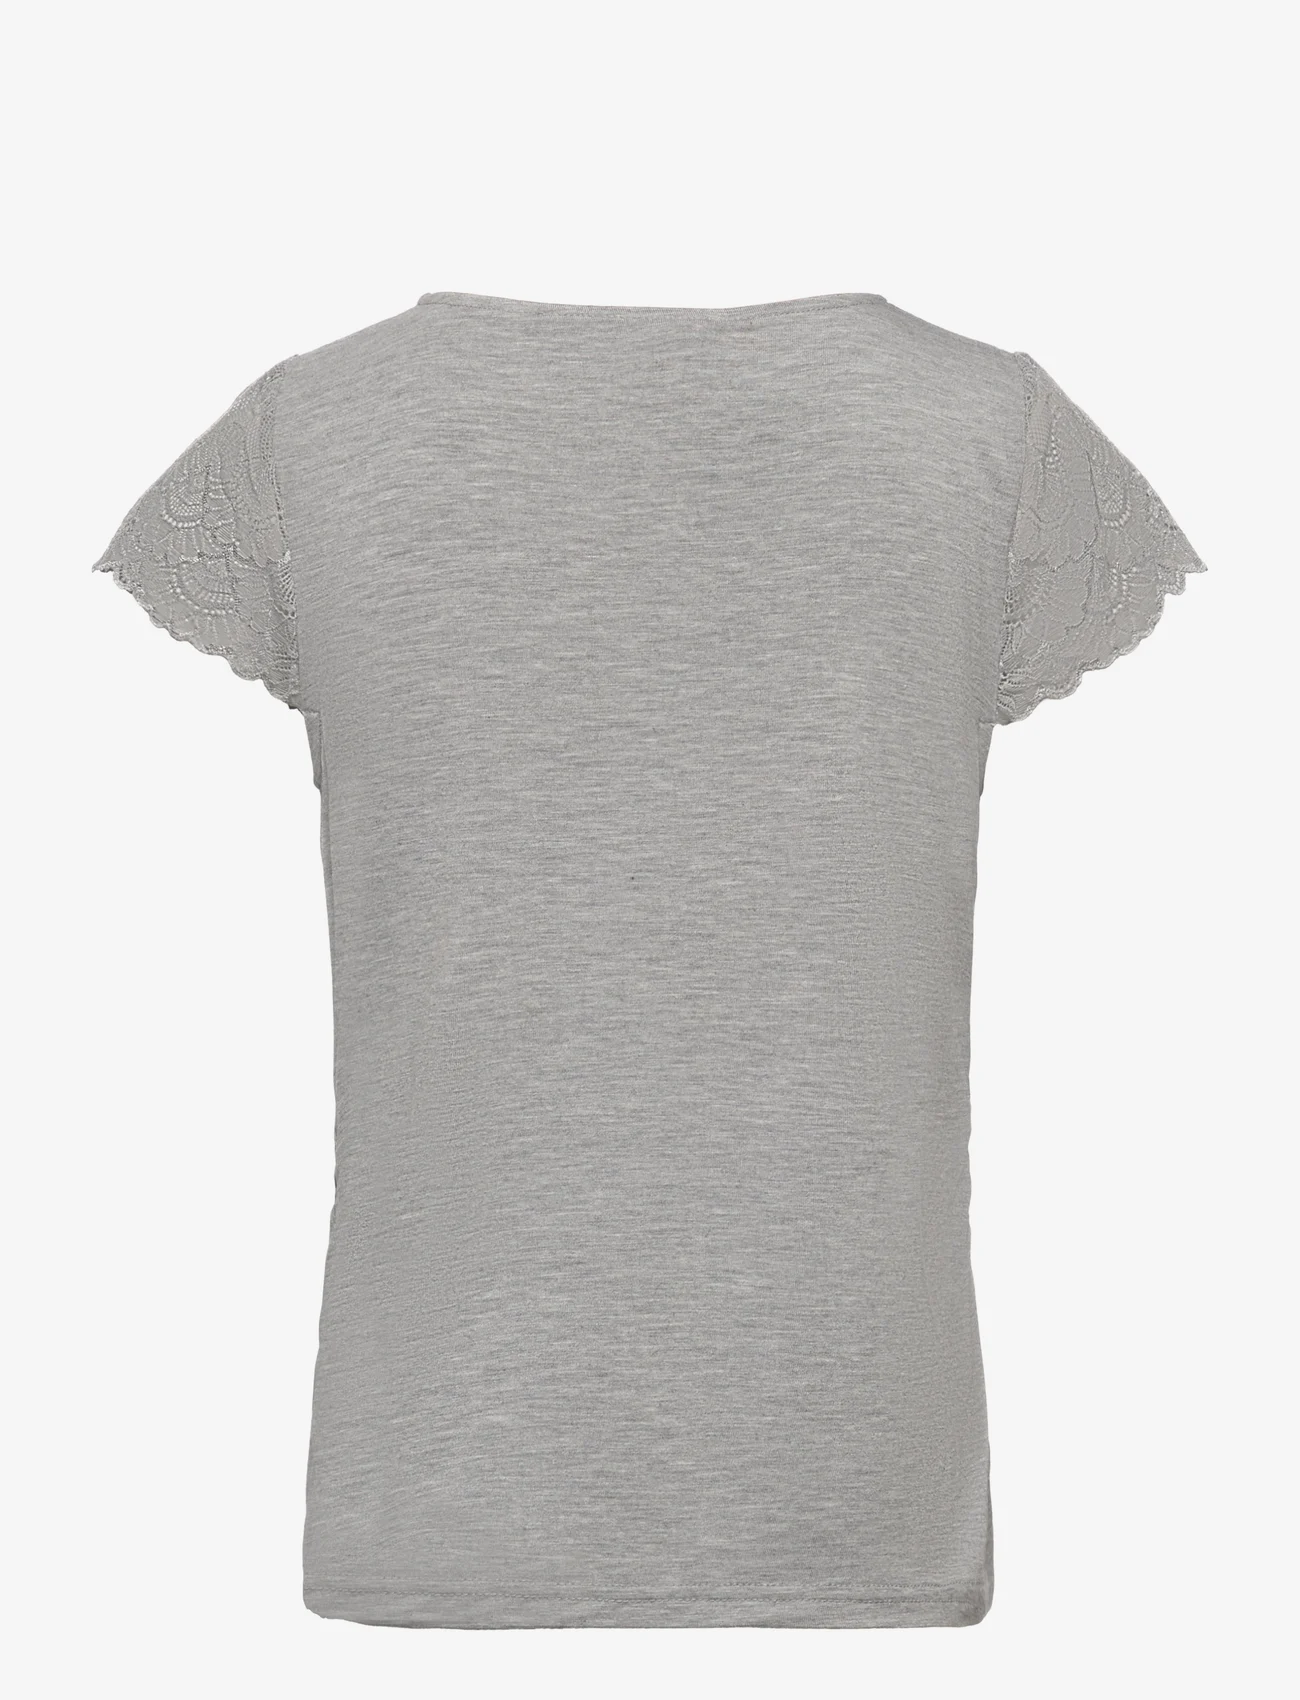 Rosemunde Kids - T-shirt ss - sommerschnäppchen - light grey melange - 1